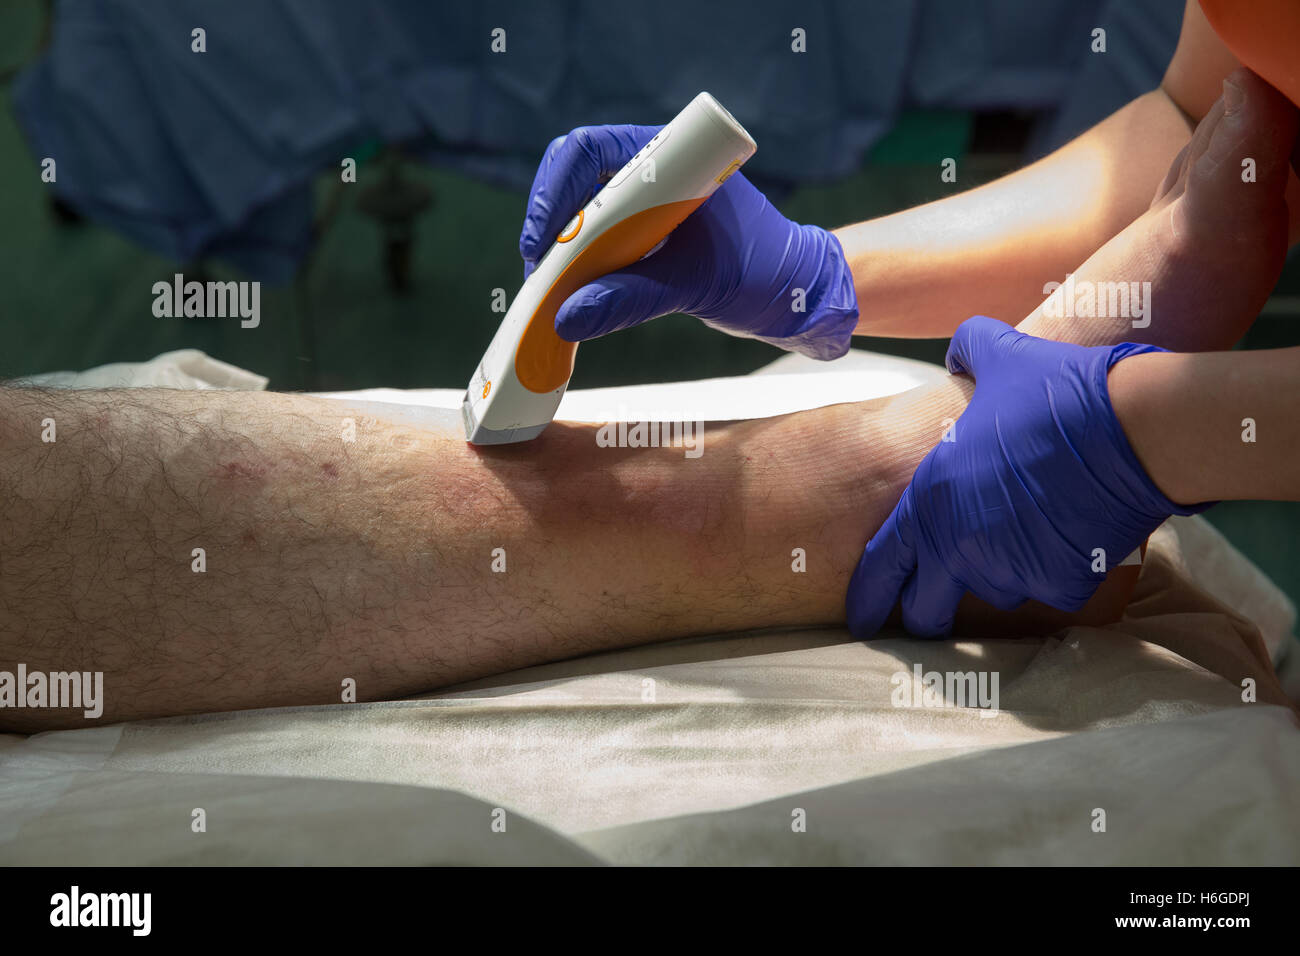 Préparation du patient pour réduction ouverte et la fixation interne de la cheville à la cheville l'opération.La jambe du patient est rasée Banque D'Images